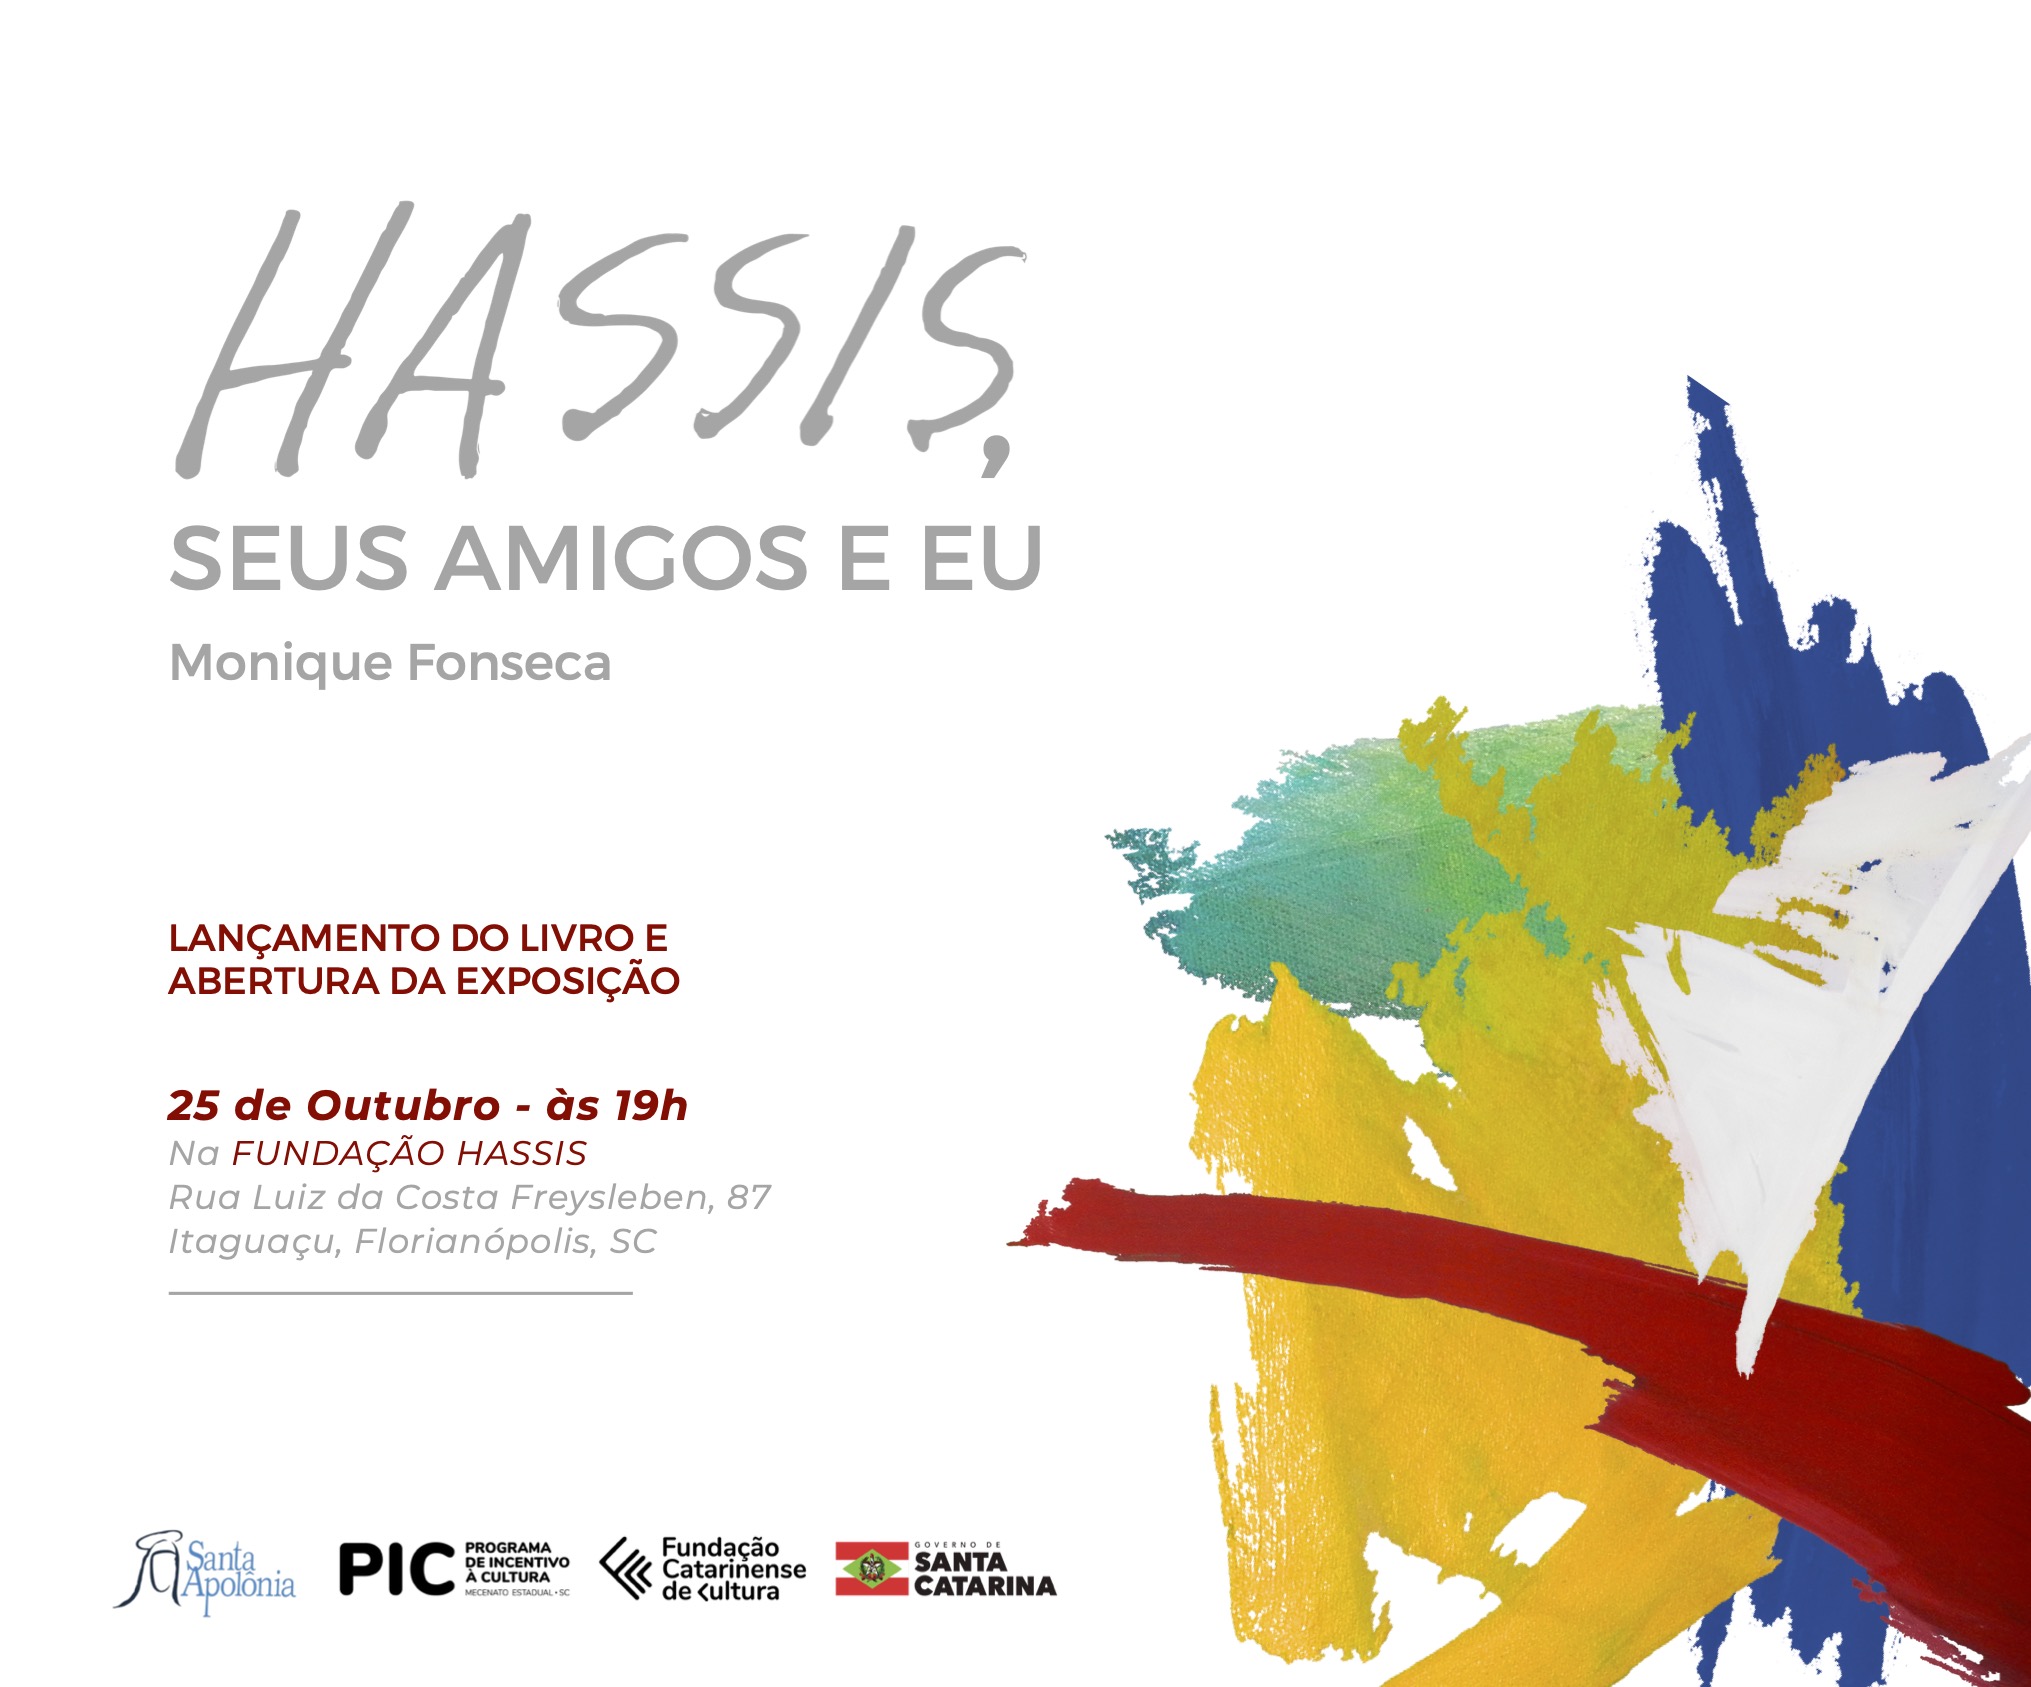 Vinte artistas interpretam Hassis em exposição e livro